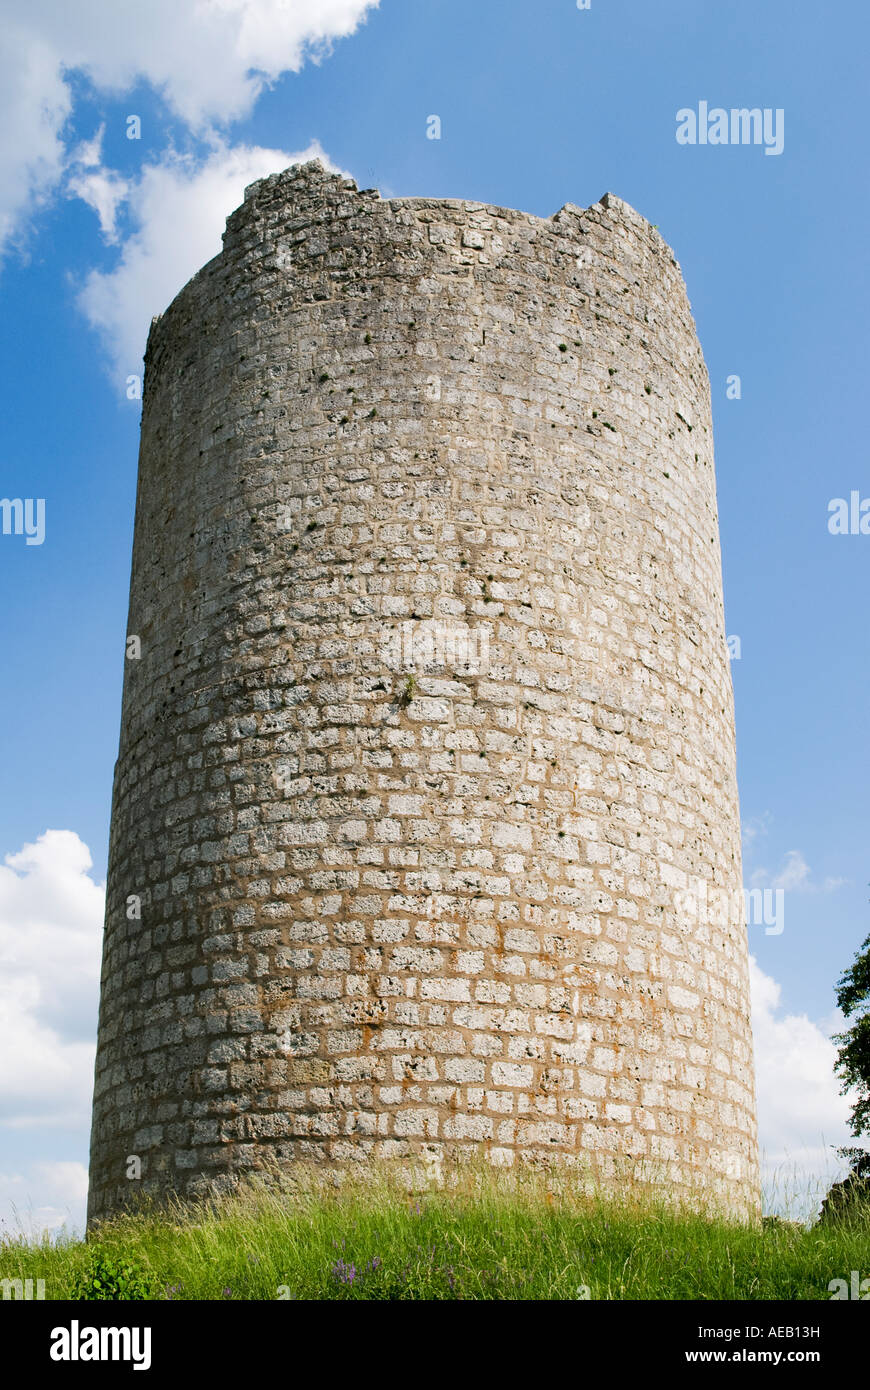 La rovina del castello di torre, Kallmuenz, Germania Foto Stock